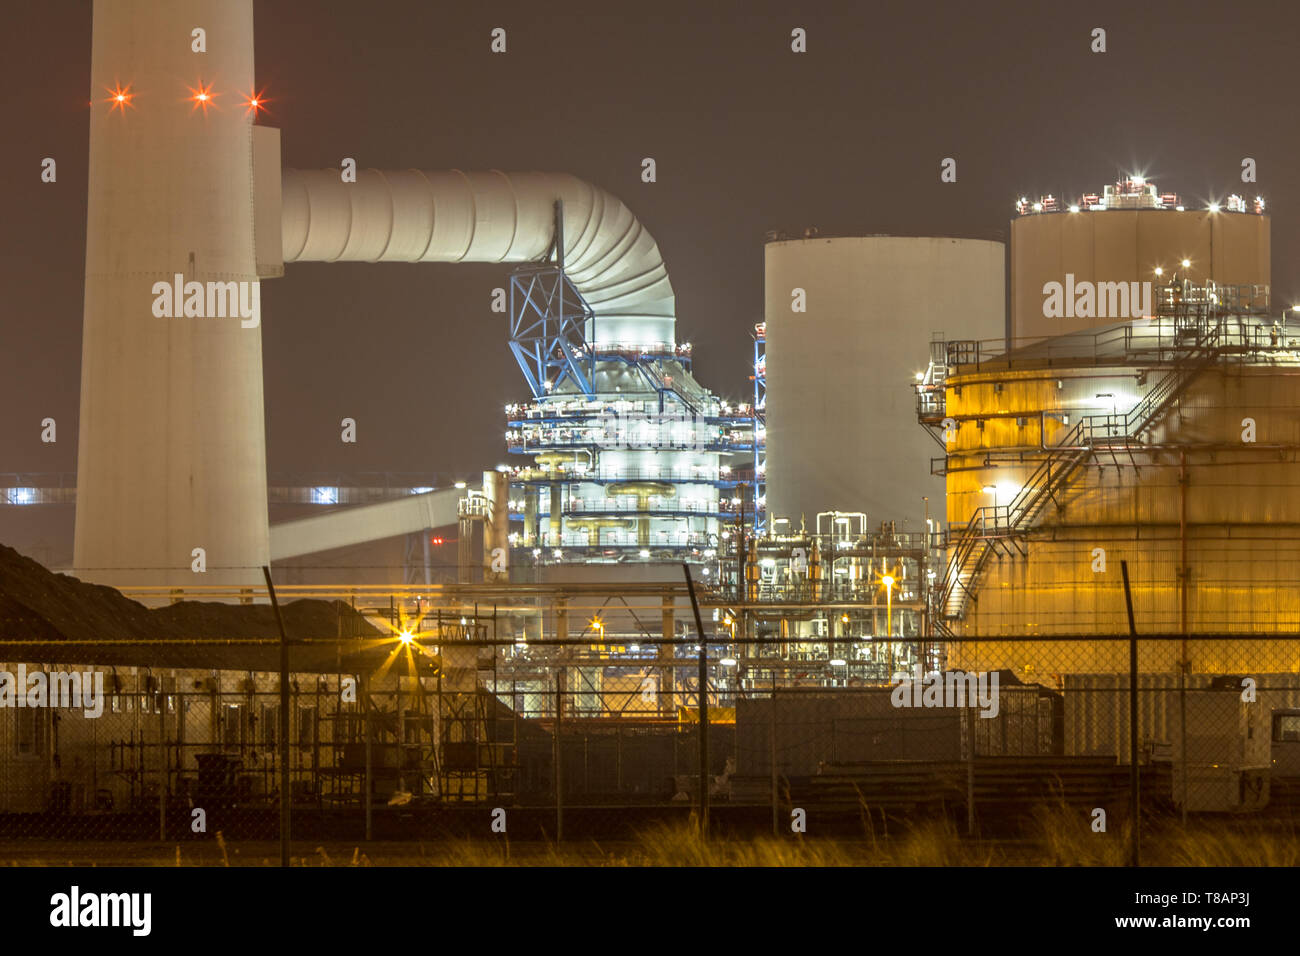 Détail de l'industrie pétrochimique lumineux dans l'obscurité sur zone Maasvlakte port de Rotterdam, Pays-Bas Banque D'Images